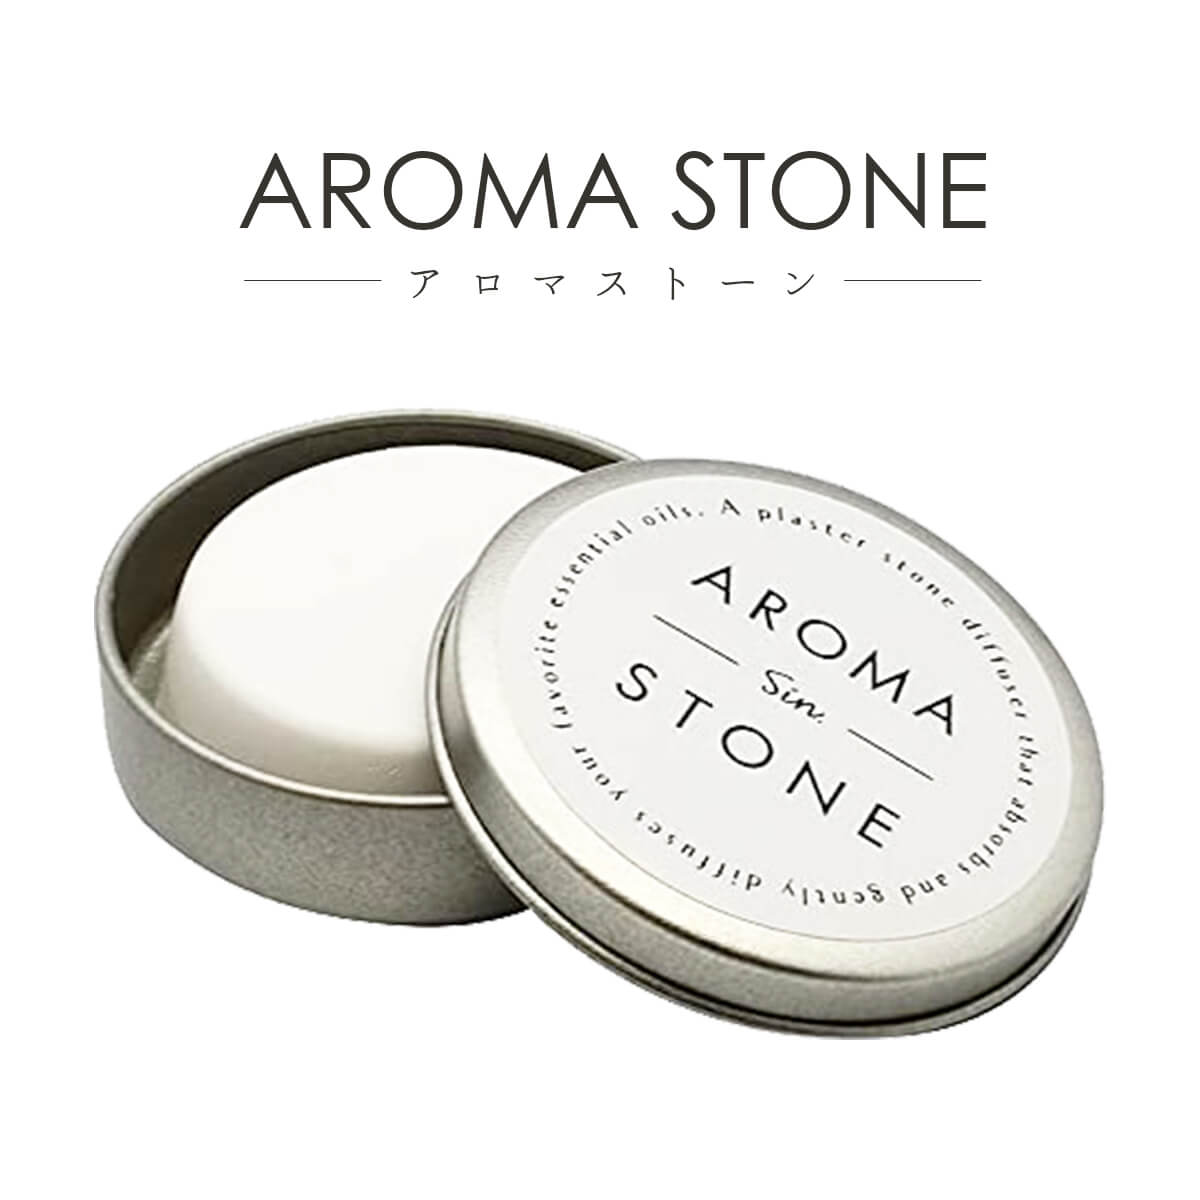 Aroma Stone